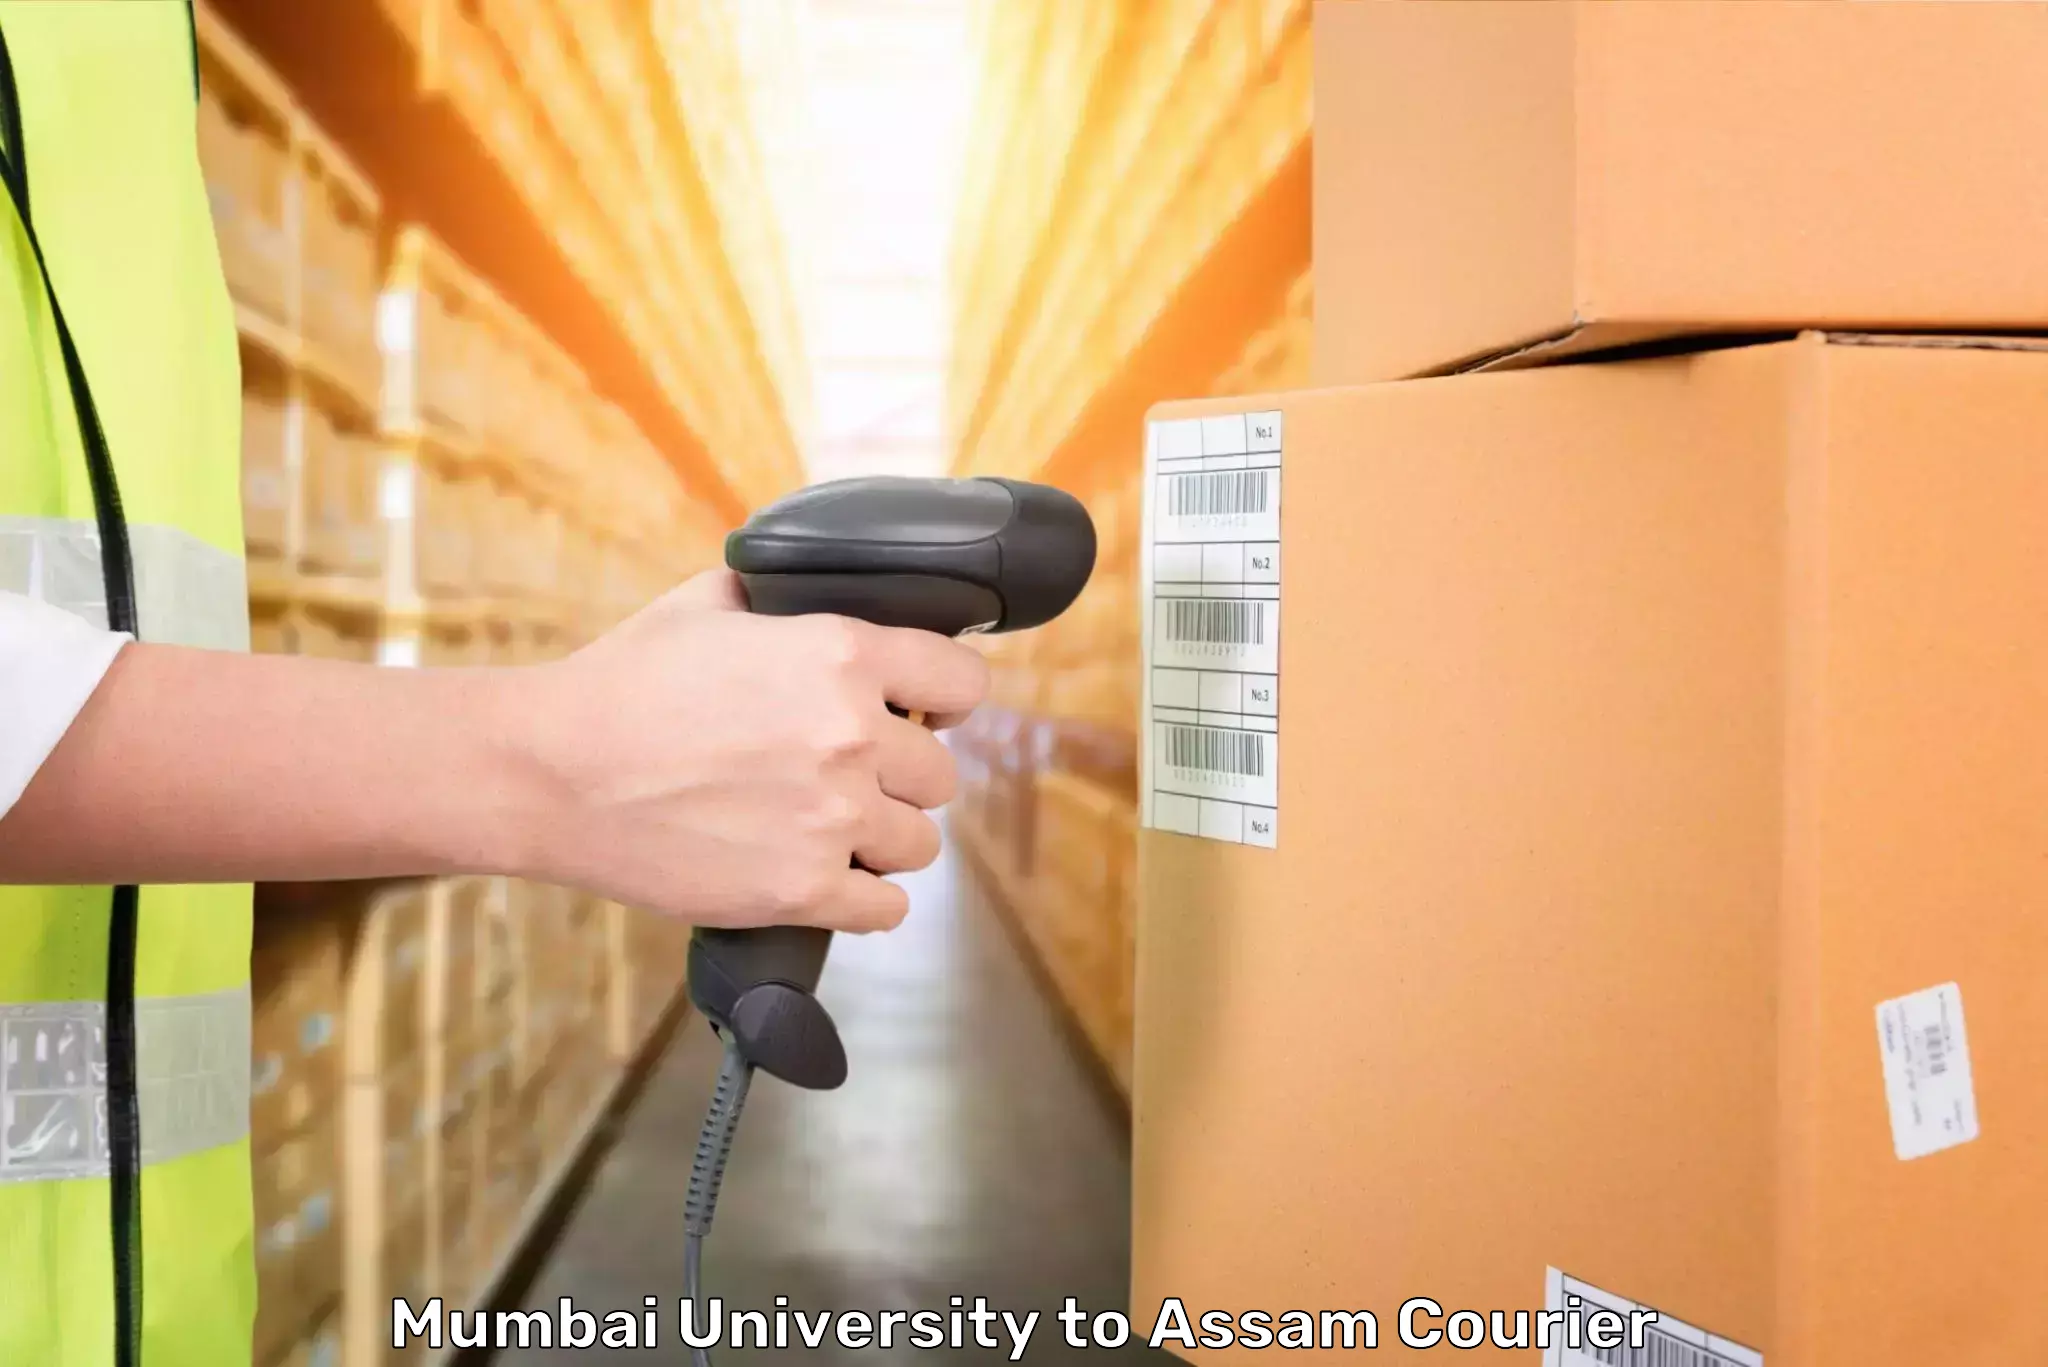 Luggage transport service Mumbai University to Dhekiajuli